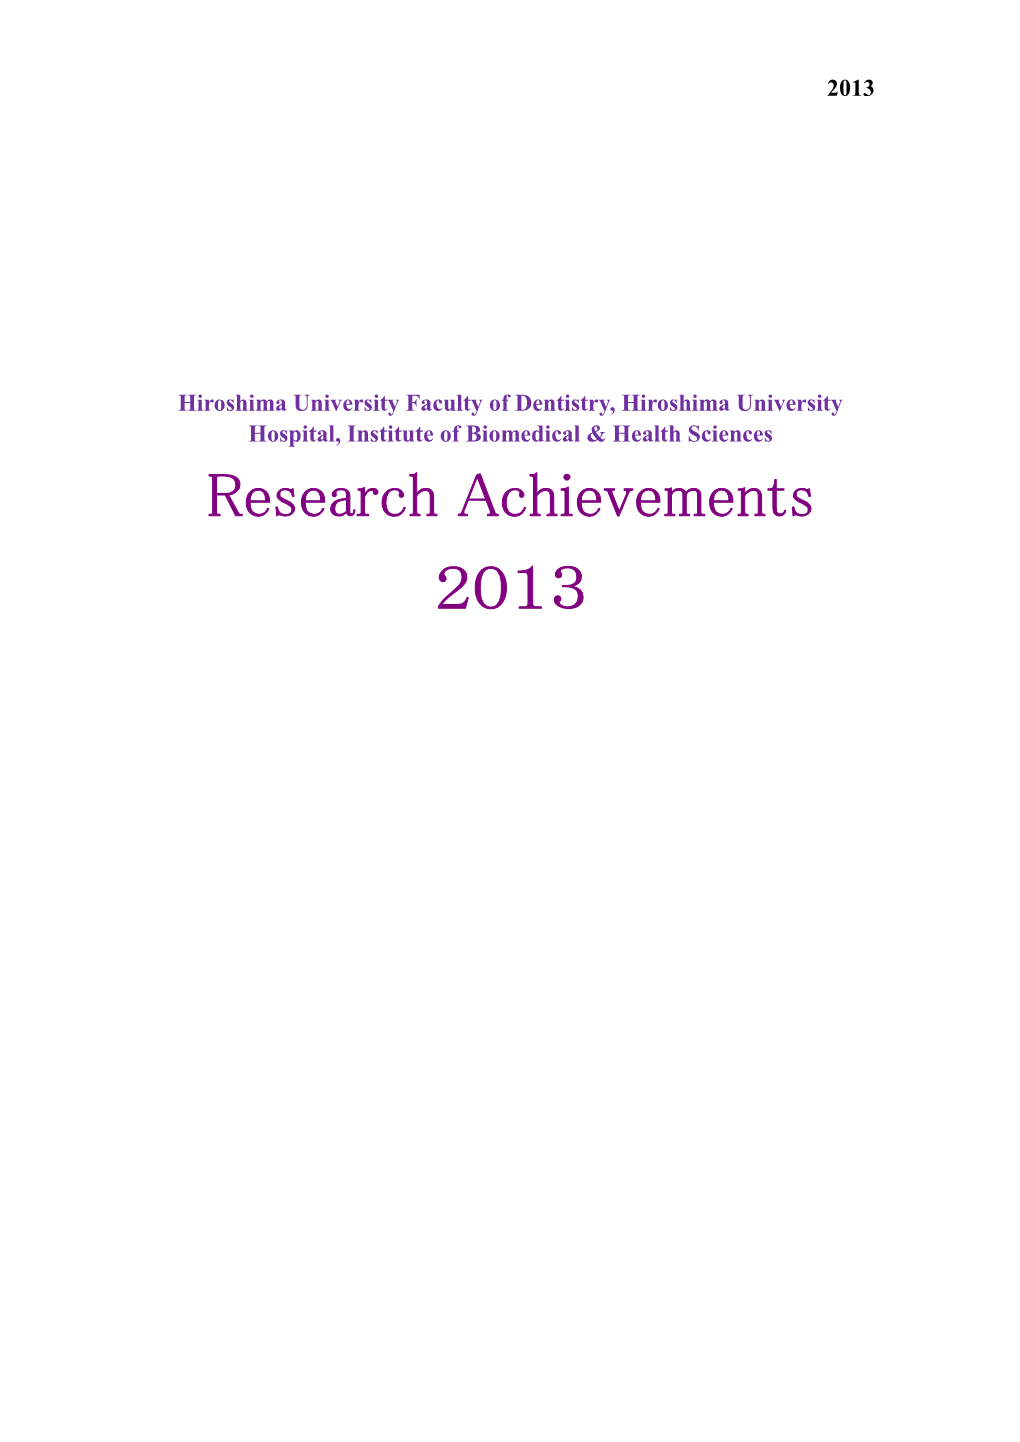 Research Achievements 2013（903.71KB）